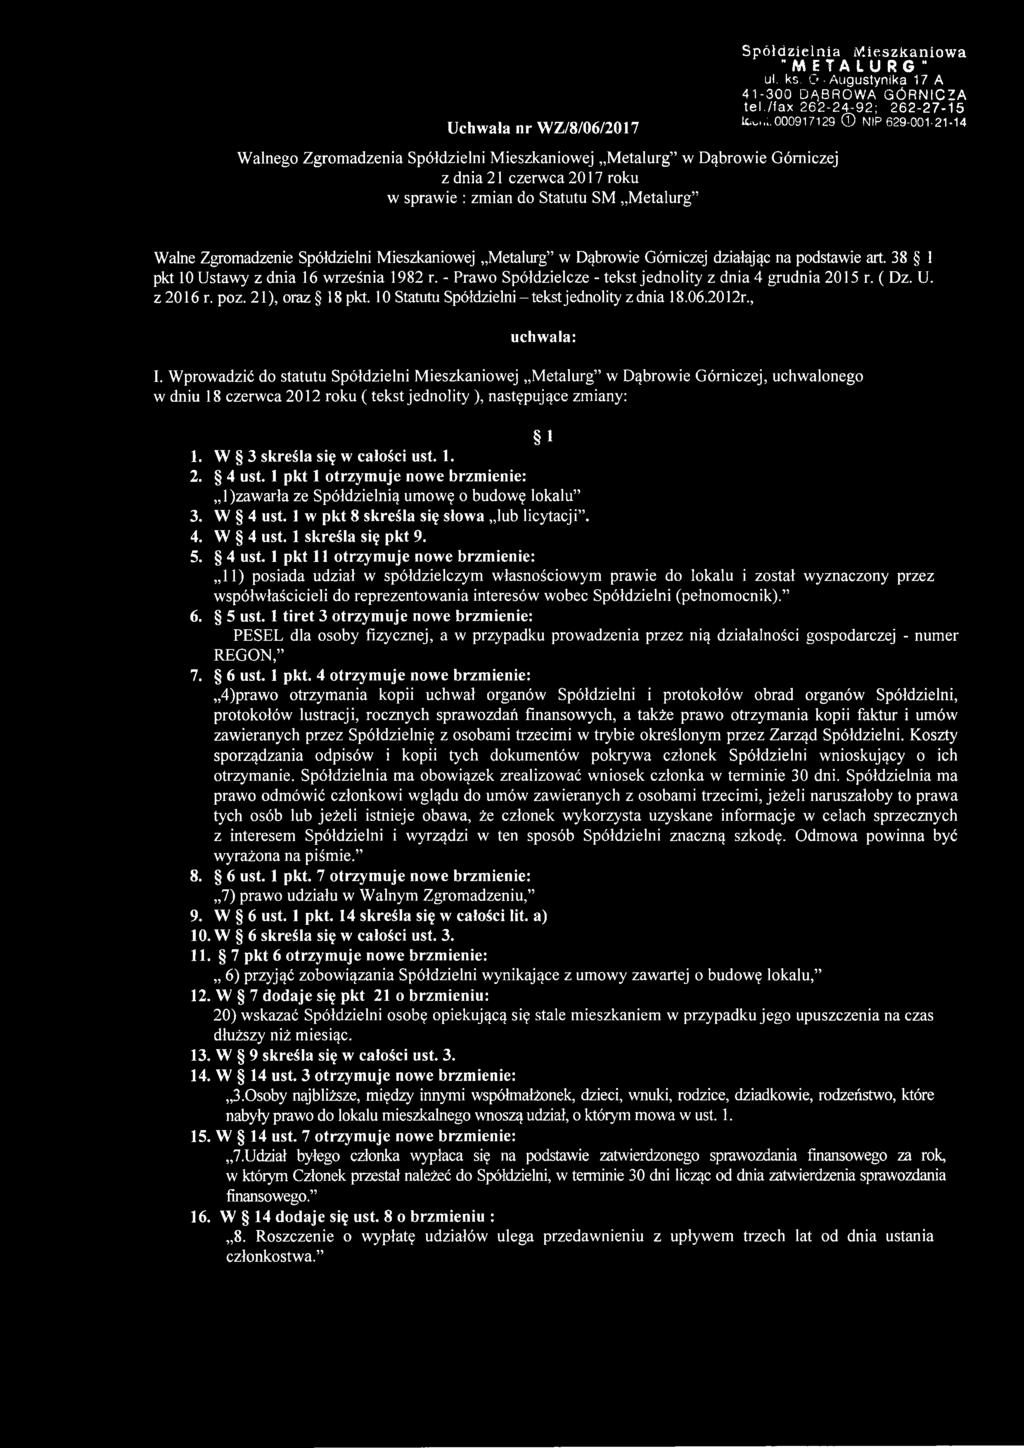 000917129 NIP 629-001-21-14 Walne Zgromadzenie Spółdzielni Mieszkaniowej Metalurg w Dąbrowie Górniczej działając na podstawie art. 38 1 pkt 10 Ustawy z dnia 16 września 1982 r.